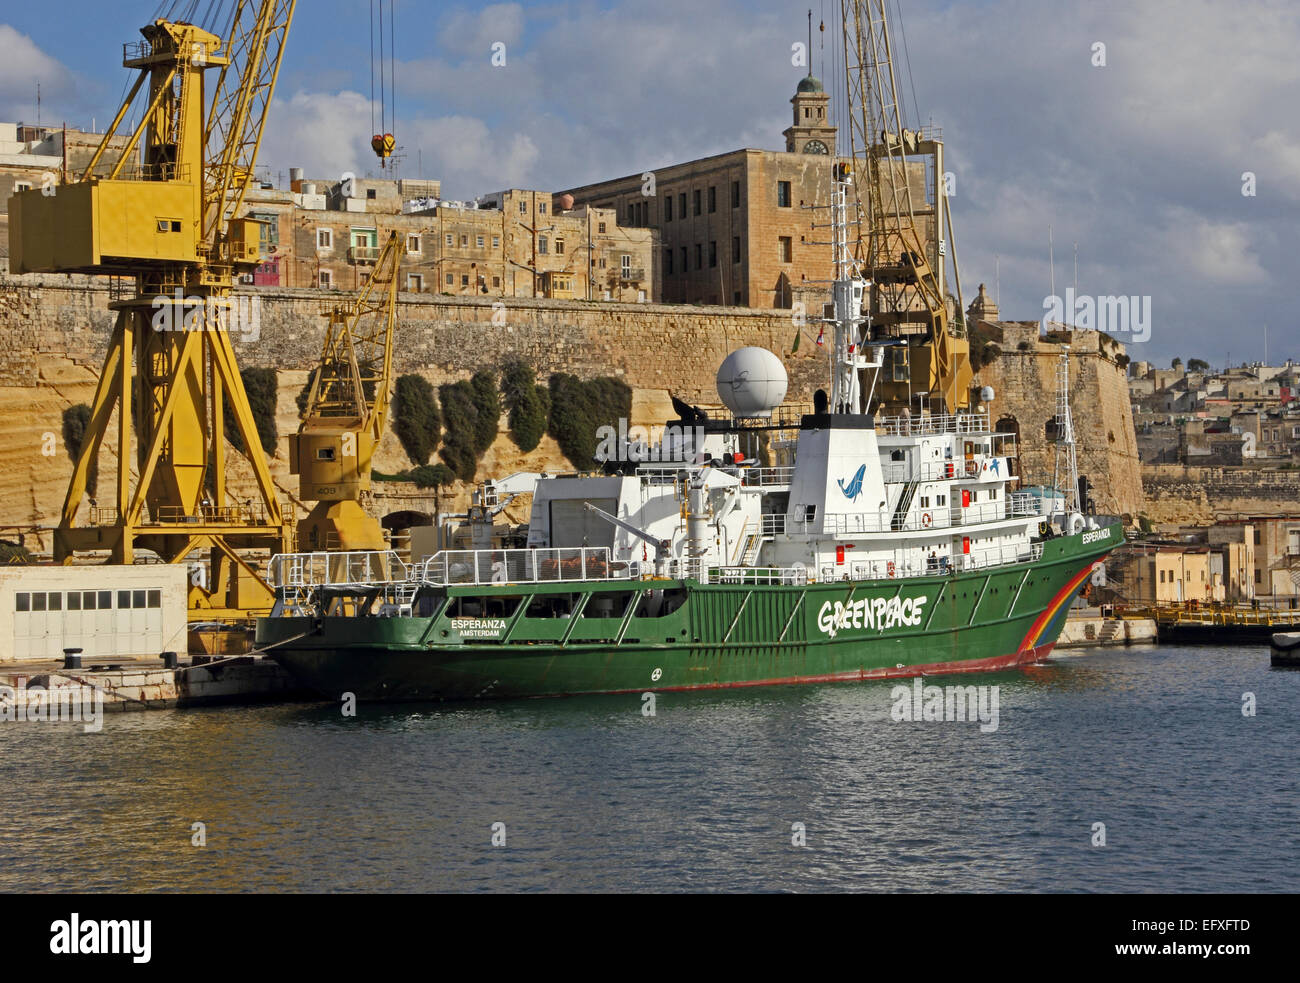 Greenpeace ship, Esperanza, moored in Grand Harbour, Valletta, Malta Stock Photo